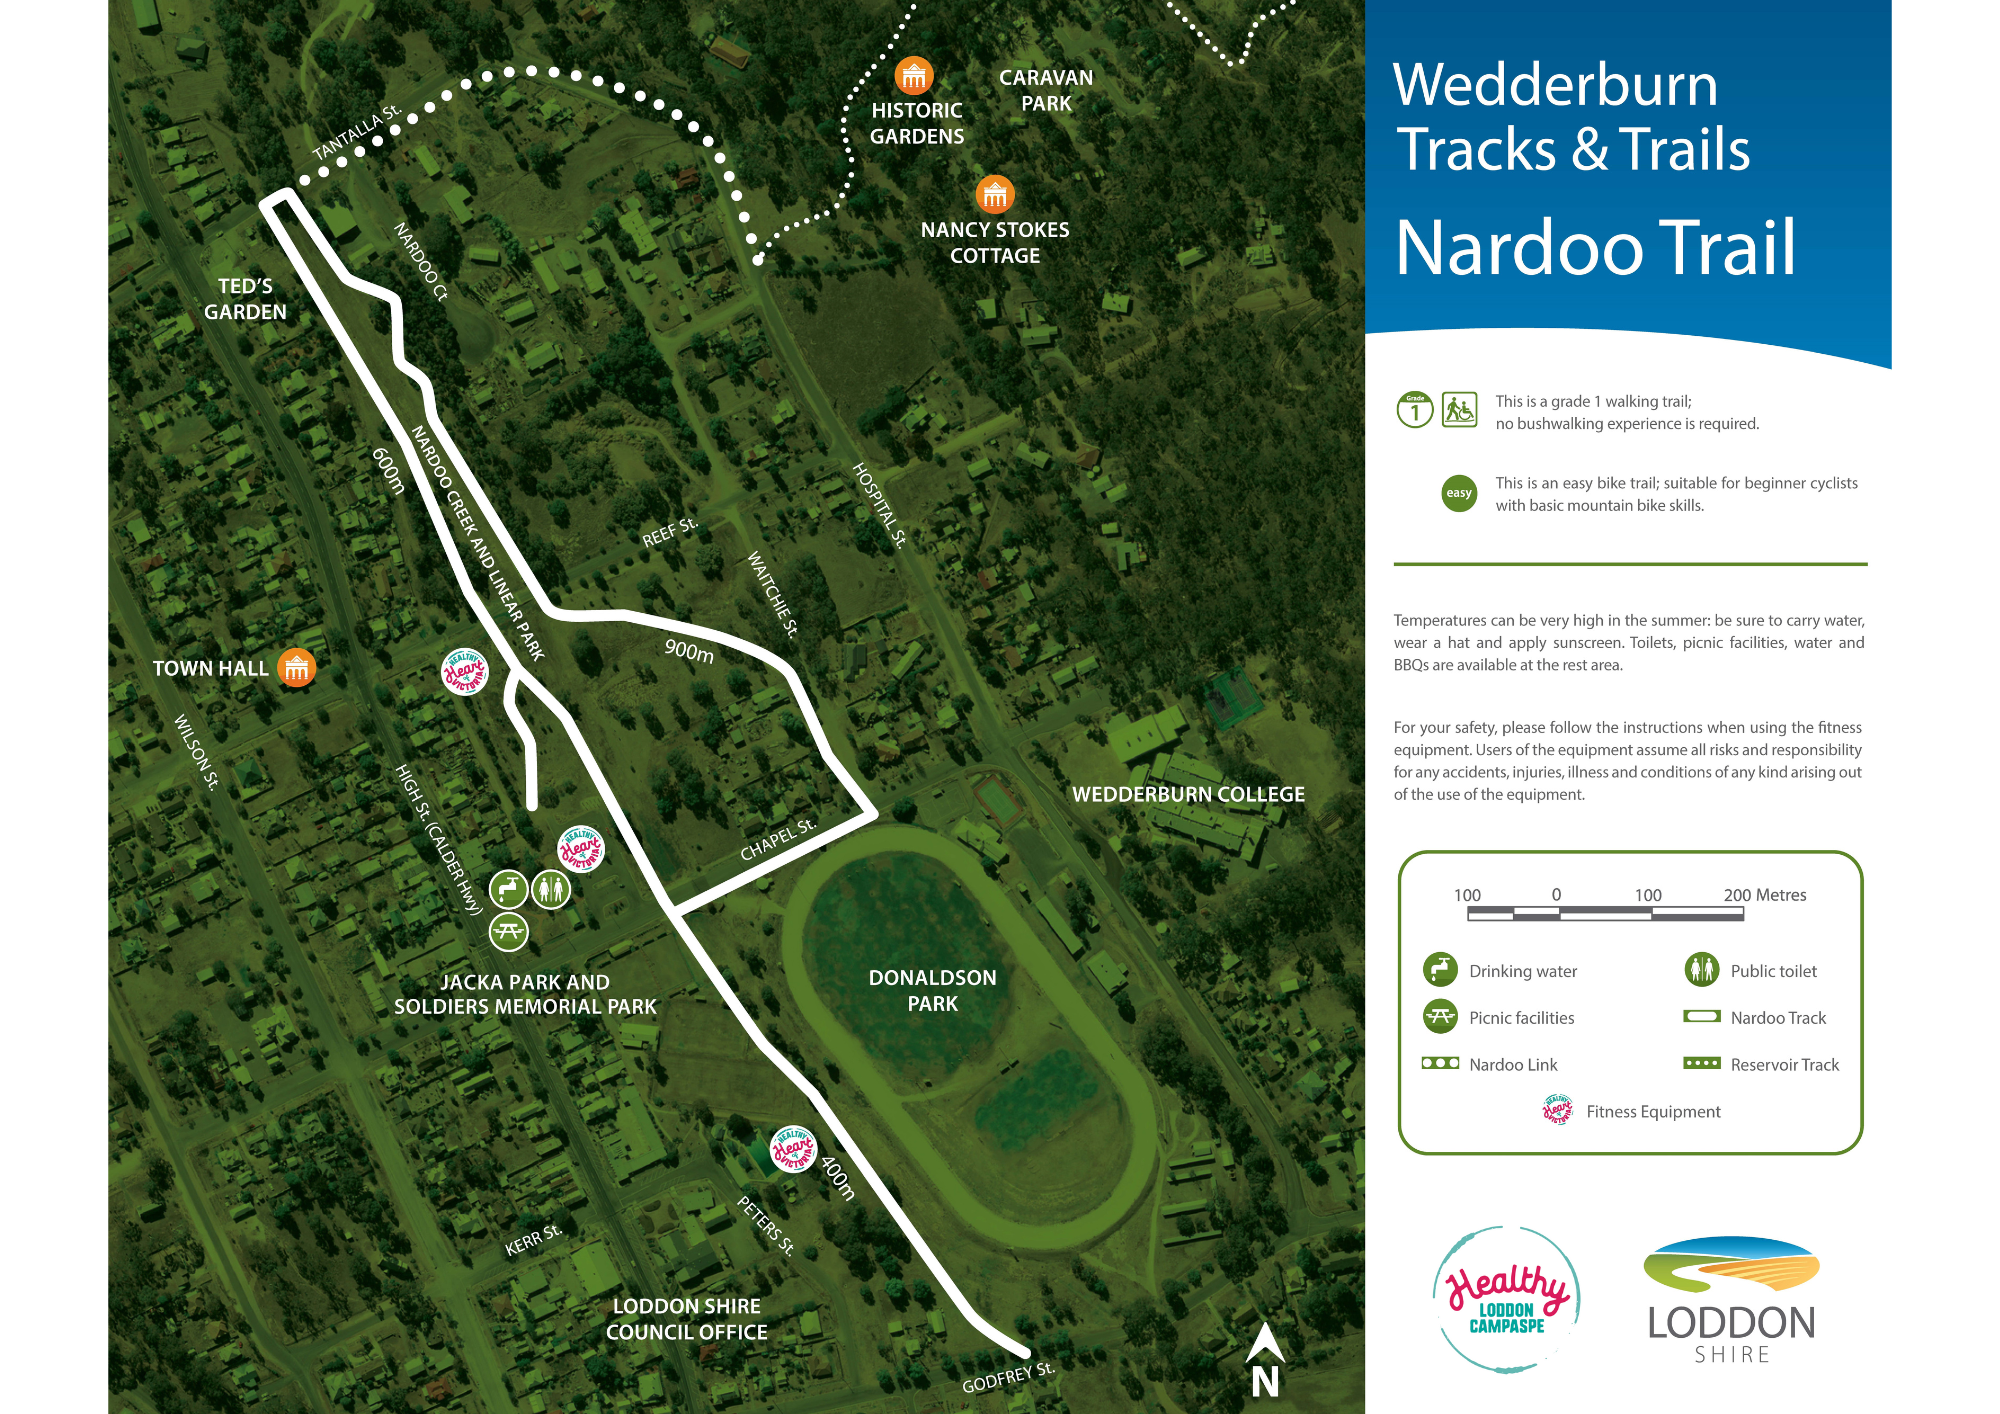 Wedderburn-track-image-10-Jan-2023.png